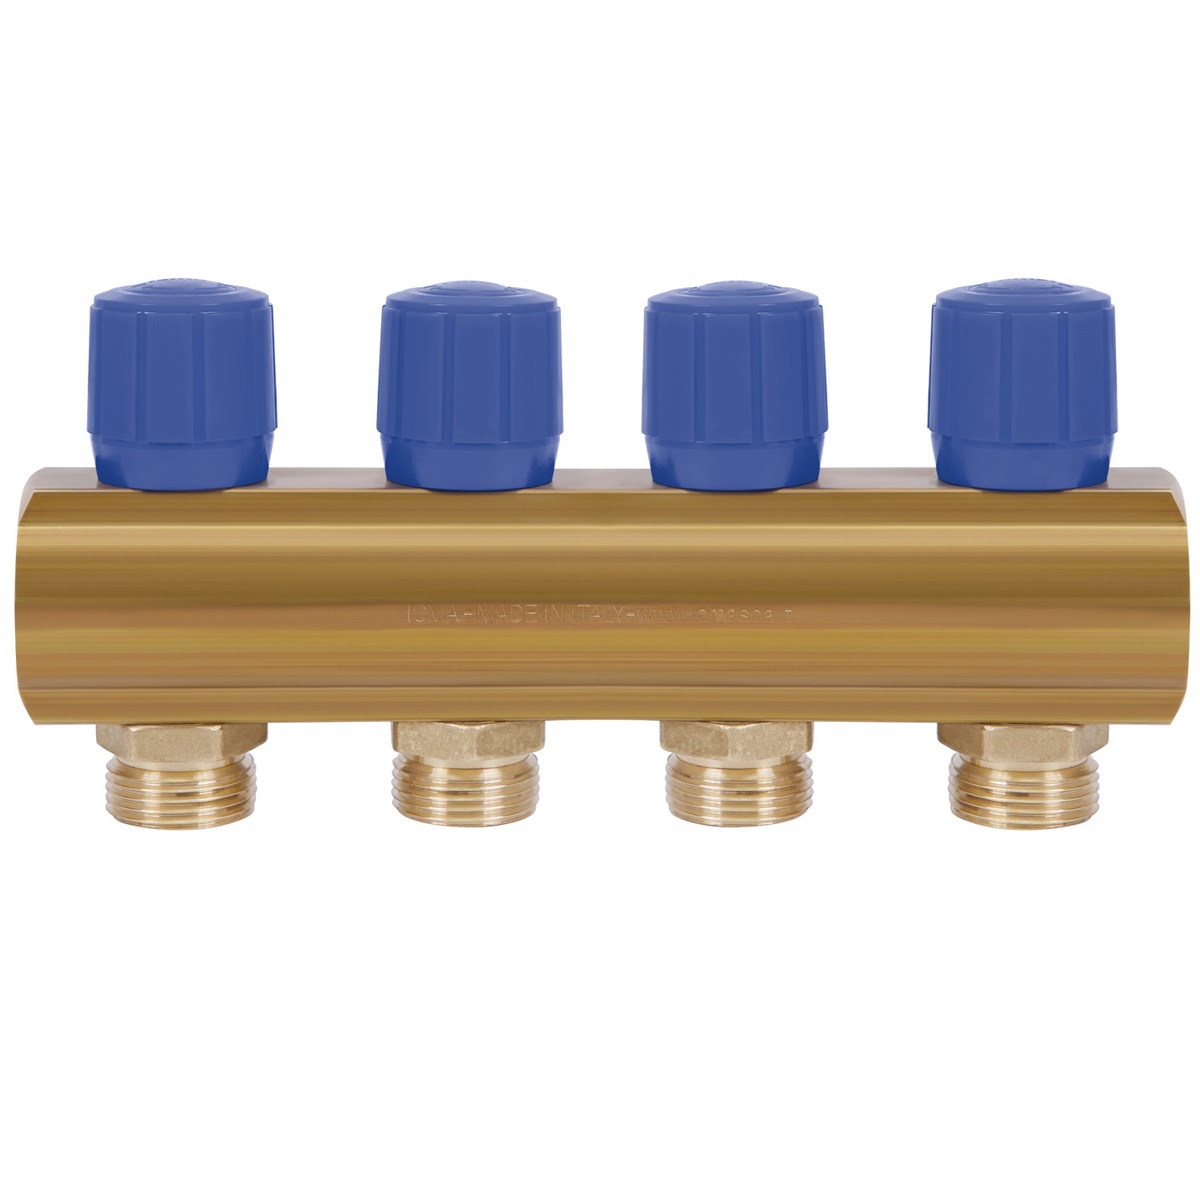 Коллектор для водопровода ICMA 4 контура 1"/3/4" 1105 (Blue) 871105PJ0512